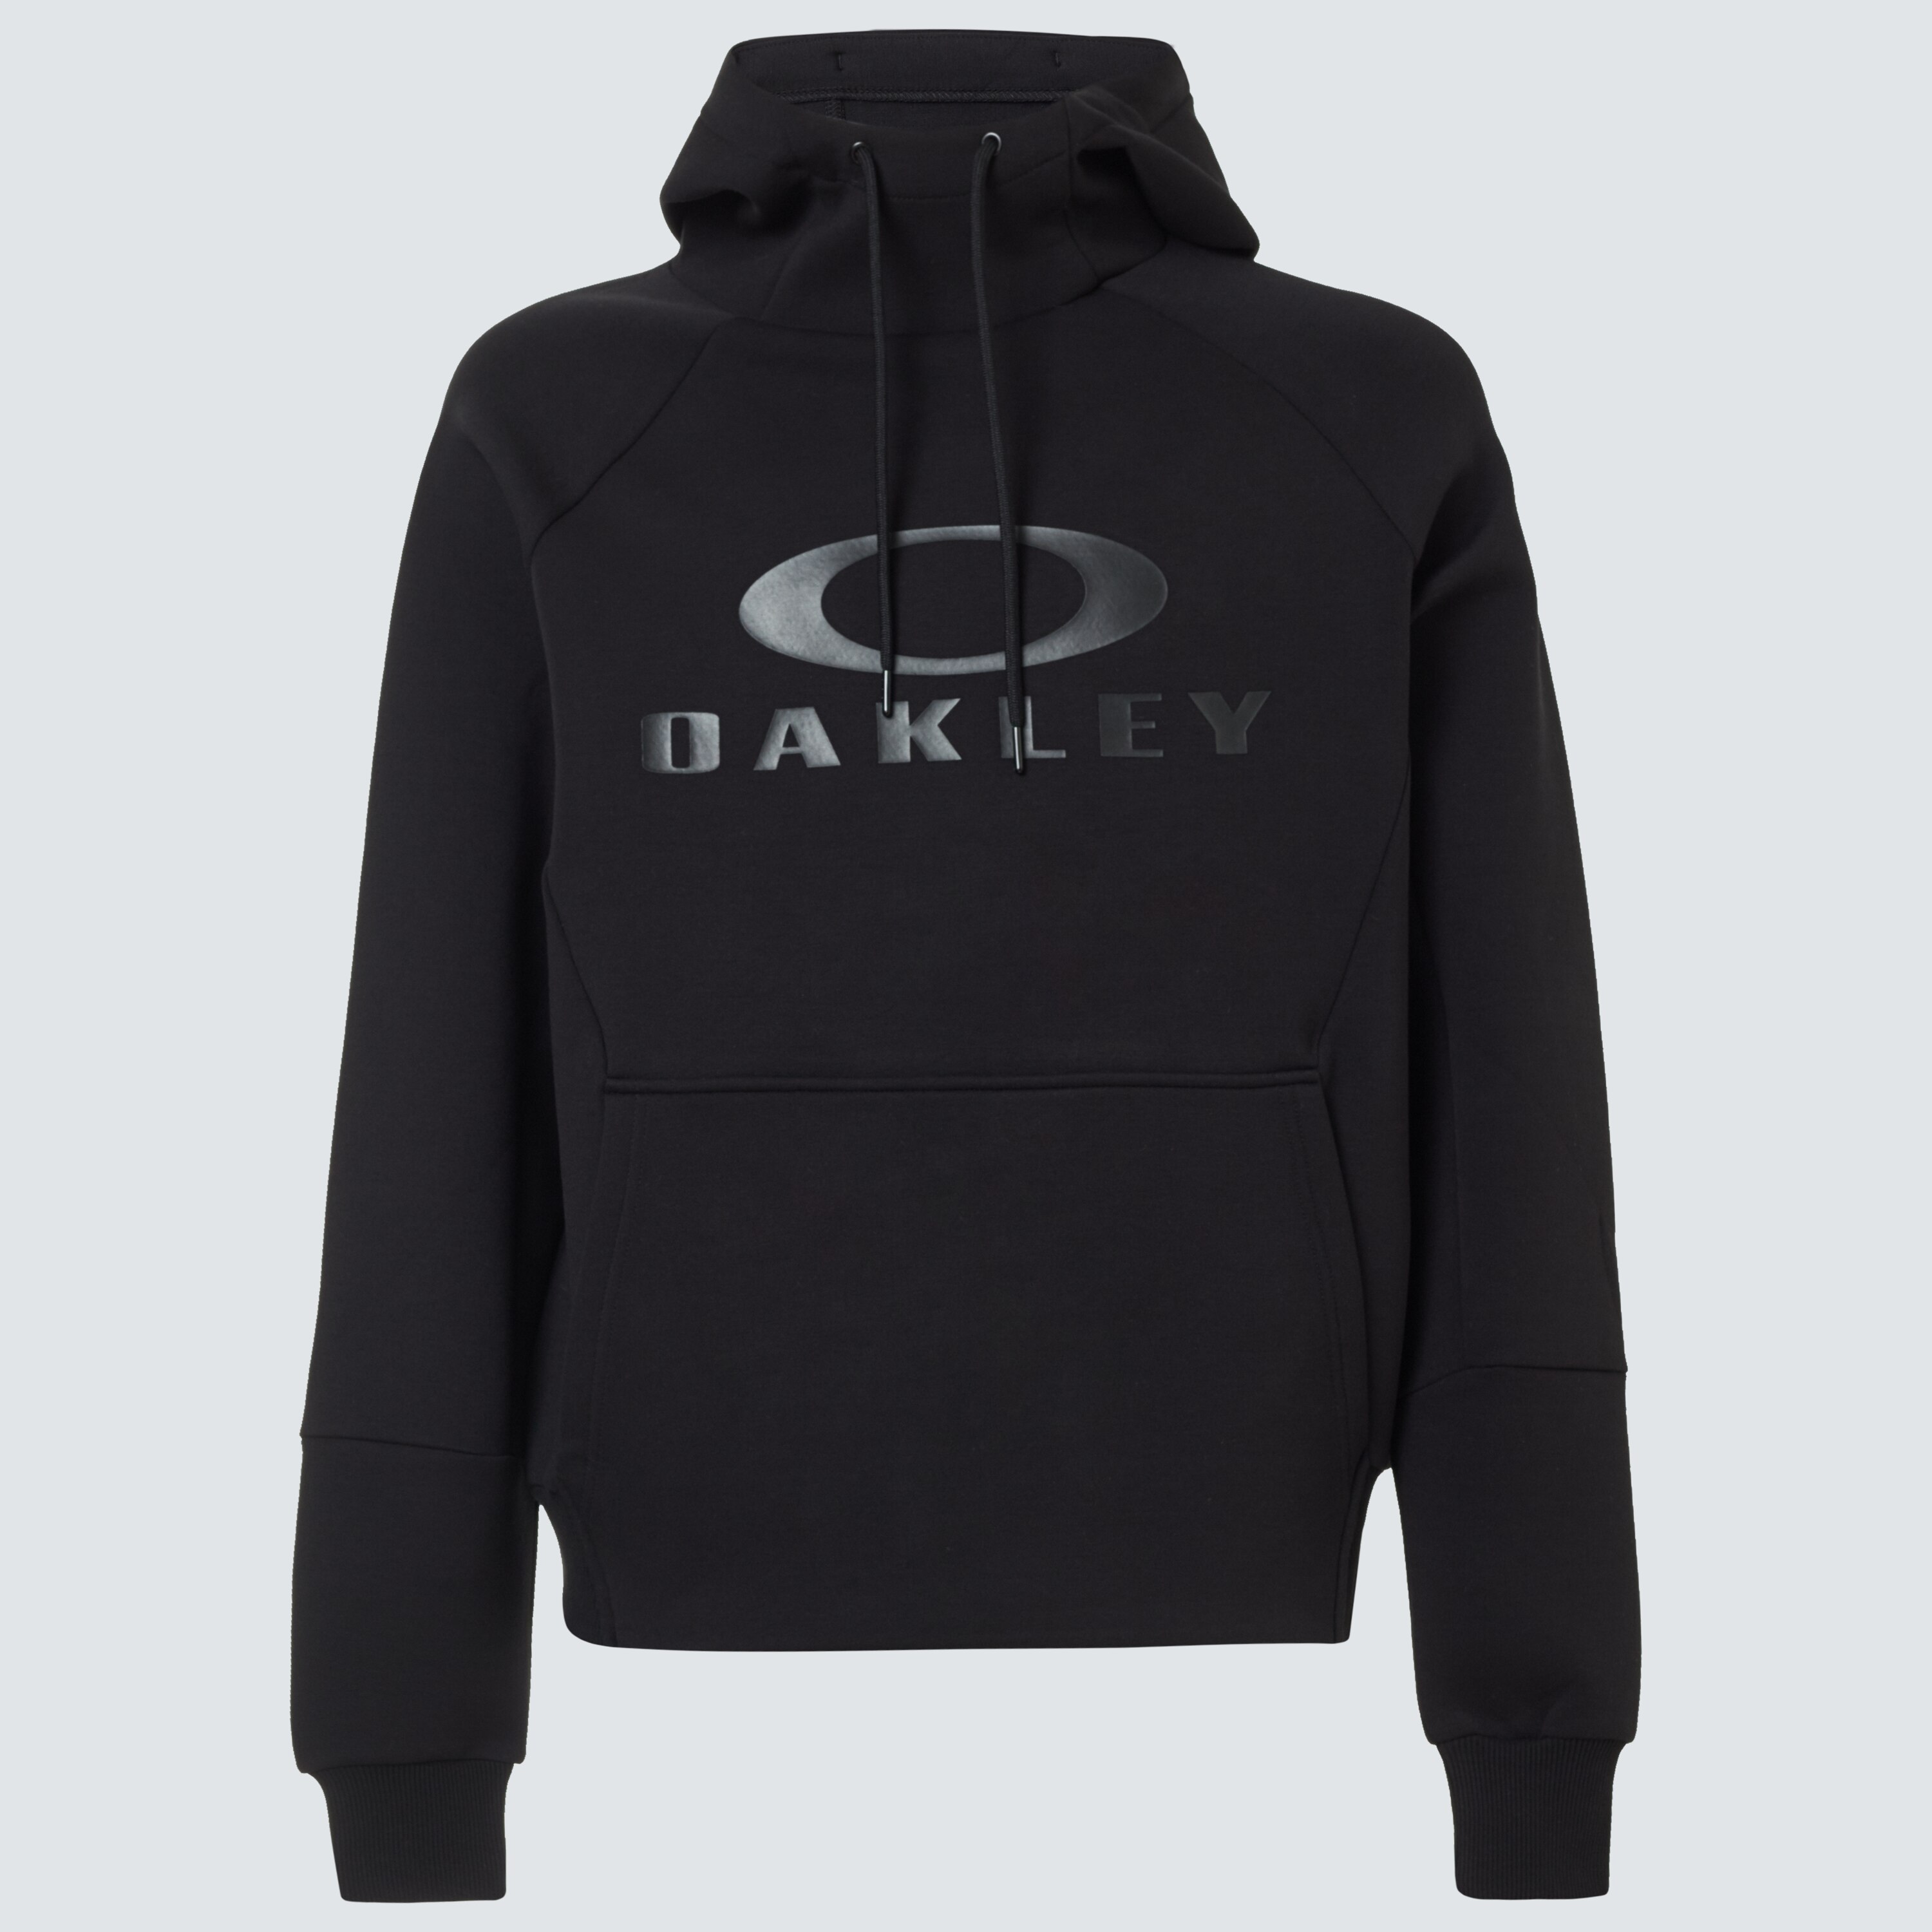 Oakley Sierra DWR Fleece Hoody - Blackout | Oakley US Store